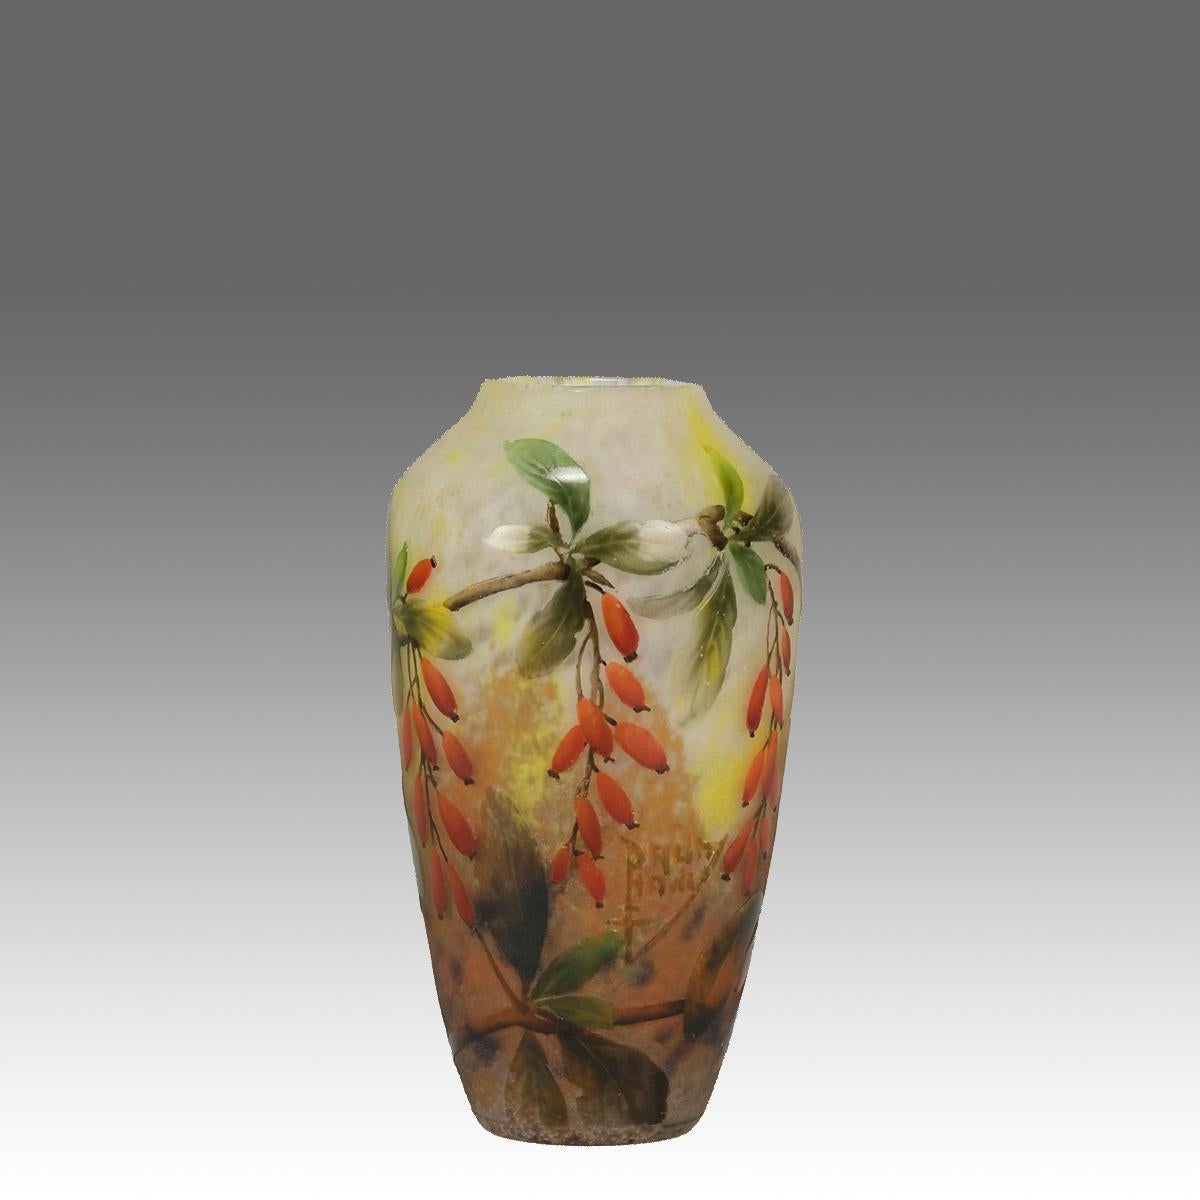 Un joli vase en verre camée de la fin du 19e siècle, représentant un cotoneaster en train de fructifier sur un fond panaché, avec d'excellentes couleurs et de fins détails, signé Daum Nancy avec la Croix de Lorraine.
INFORMATIONS